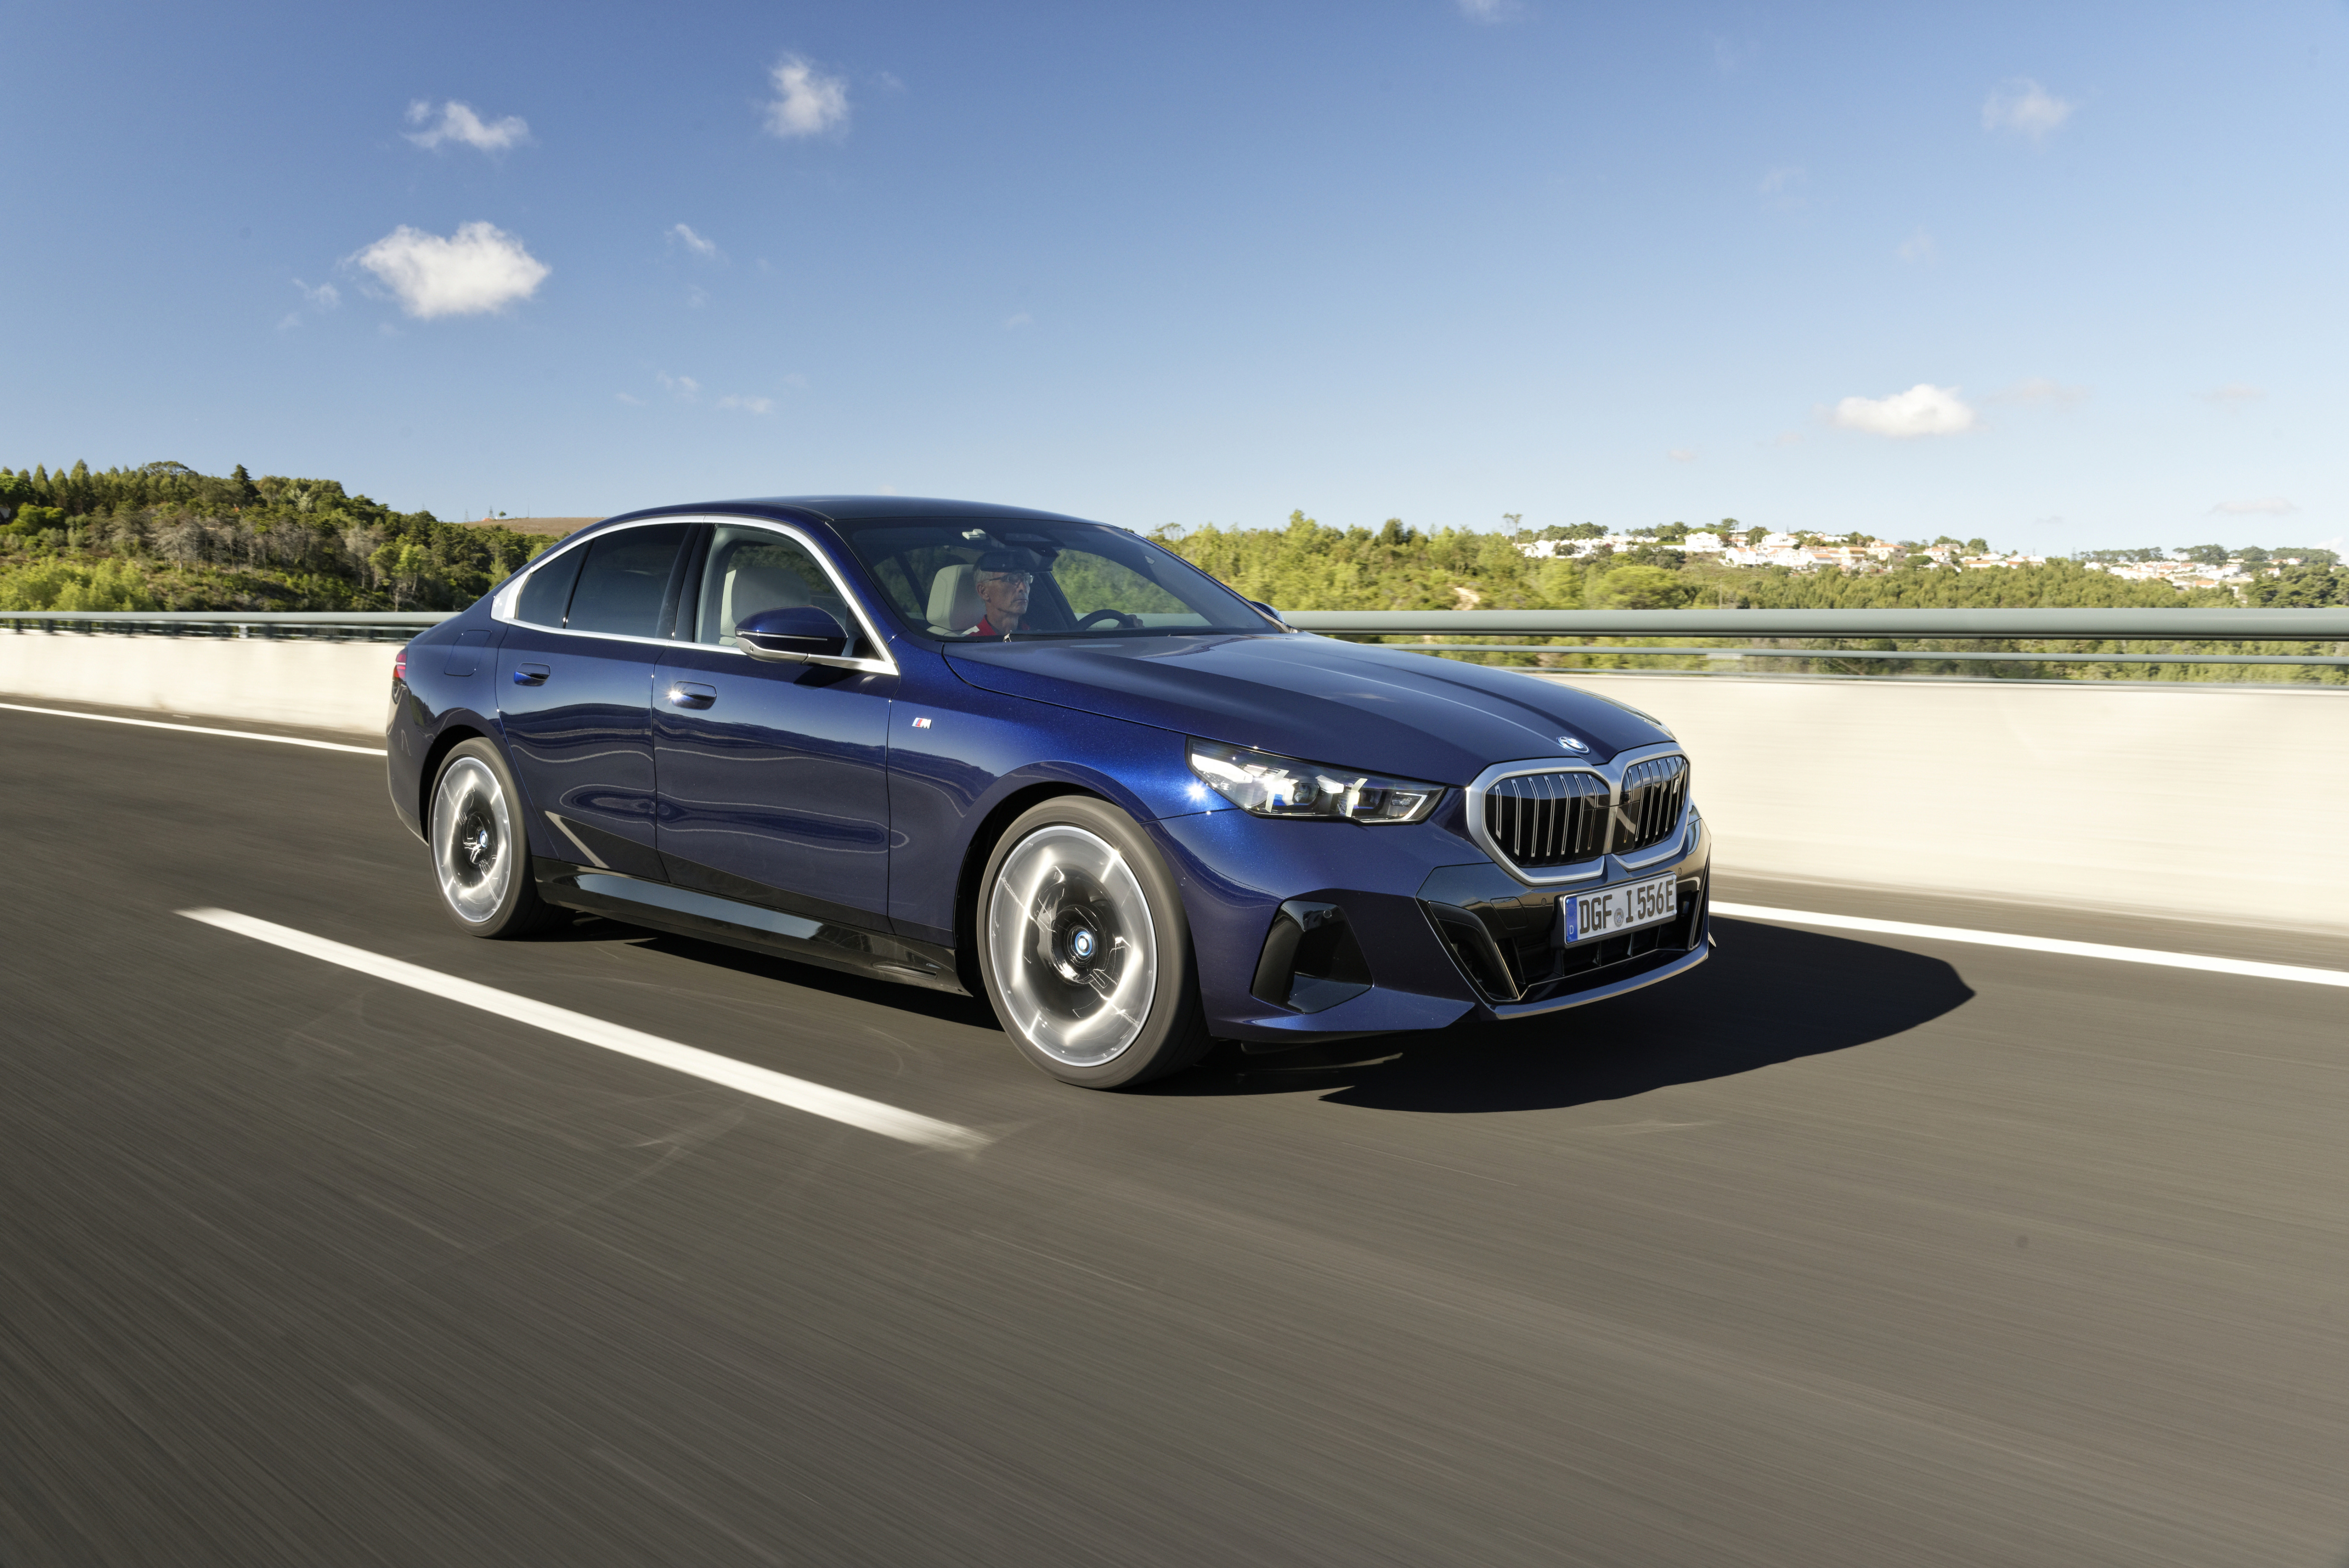 BMW i5: In der bayerischen Businesslimousine soll der E-Antrieb